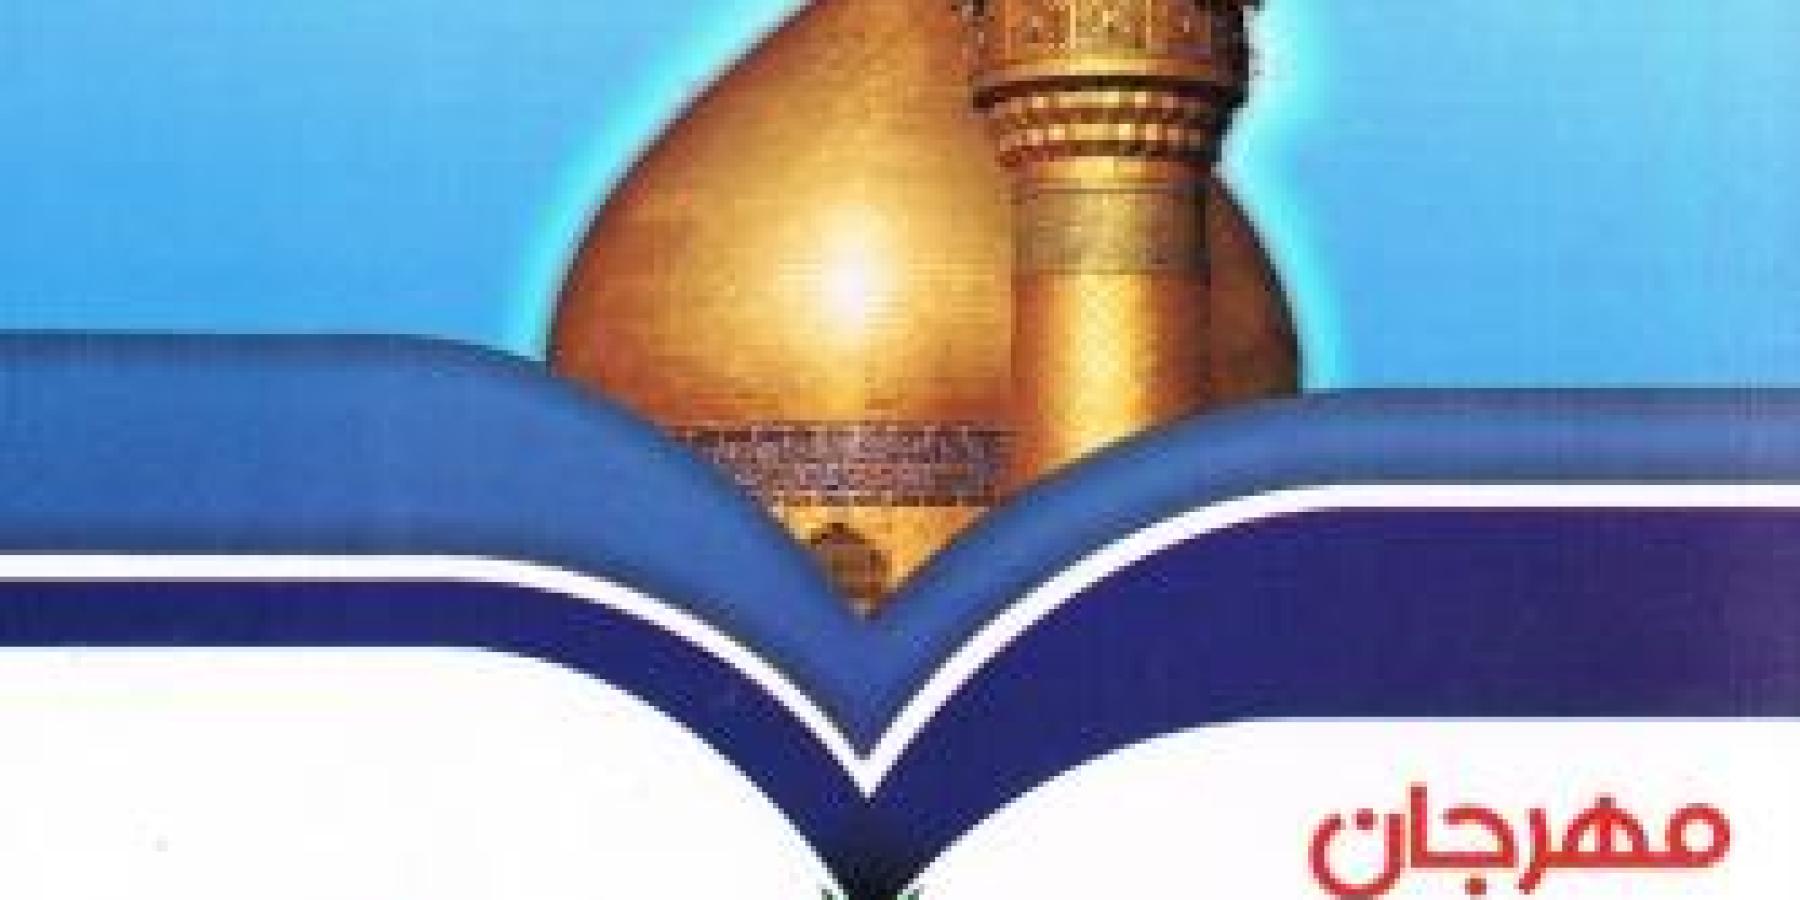 وفد من الأمانة العامة للعتبة العلوية المقدسة يزور الجمهورية الاسلامية في إيران على هامش استعداداته لمهرجان الغدير العالمي الثاني